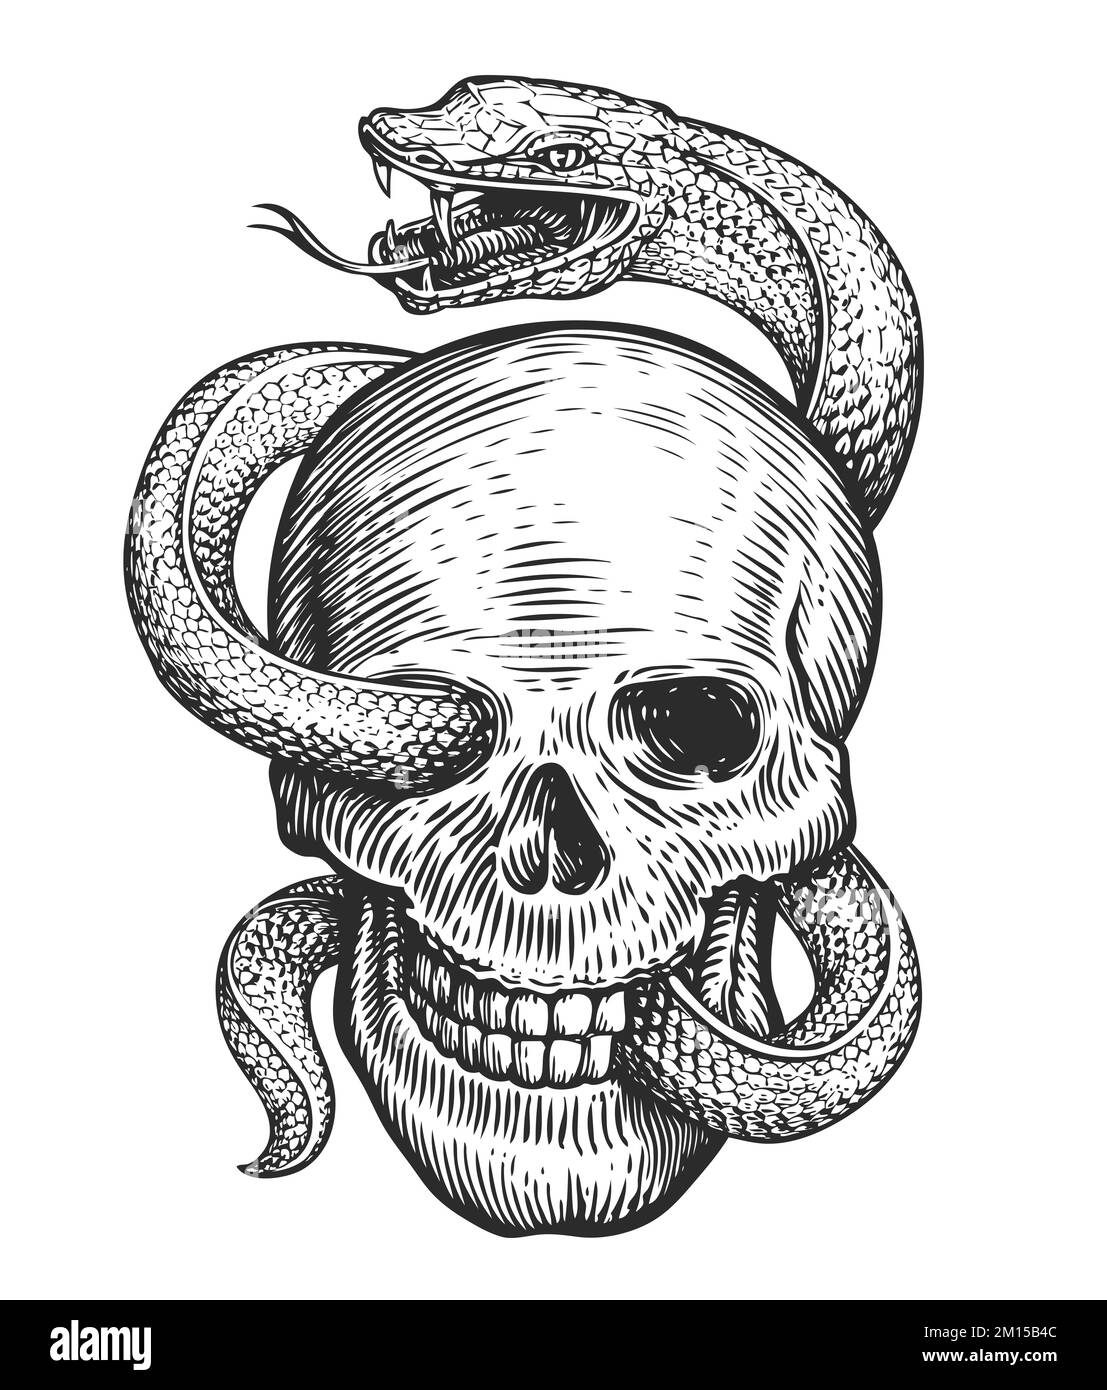 Cranio umano e Snake sketch. Illustrazione disegnata a mano in stile di incisione vintage. Tatuaggio isolato su sfondo bianco Foto Stock